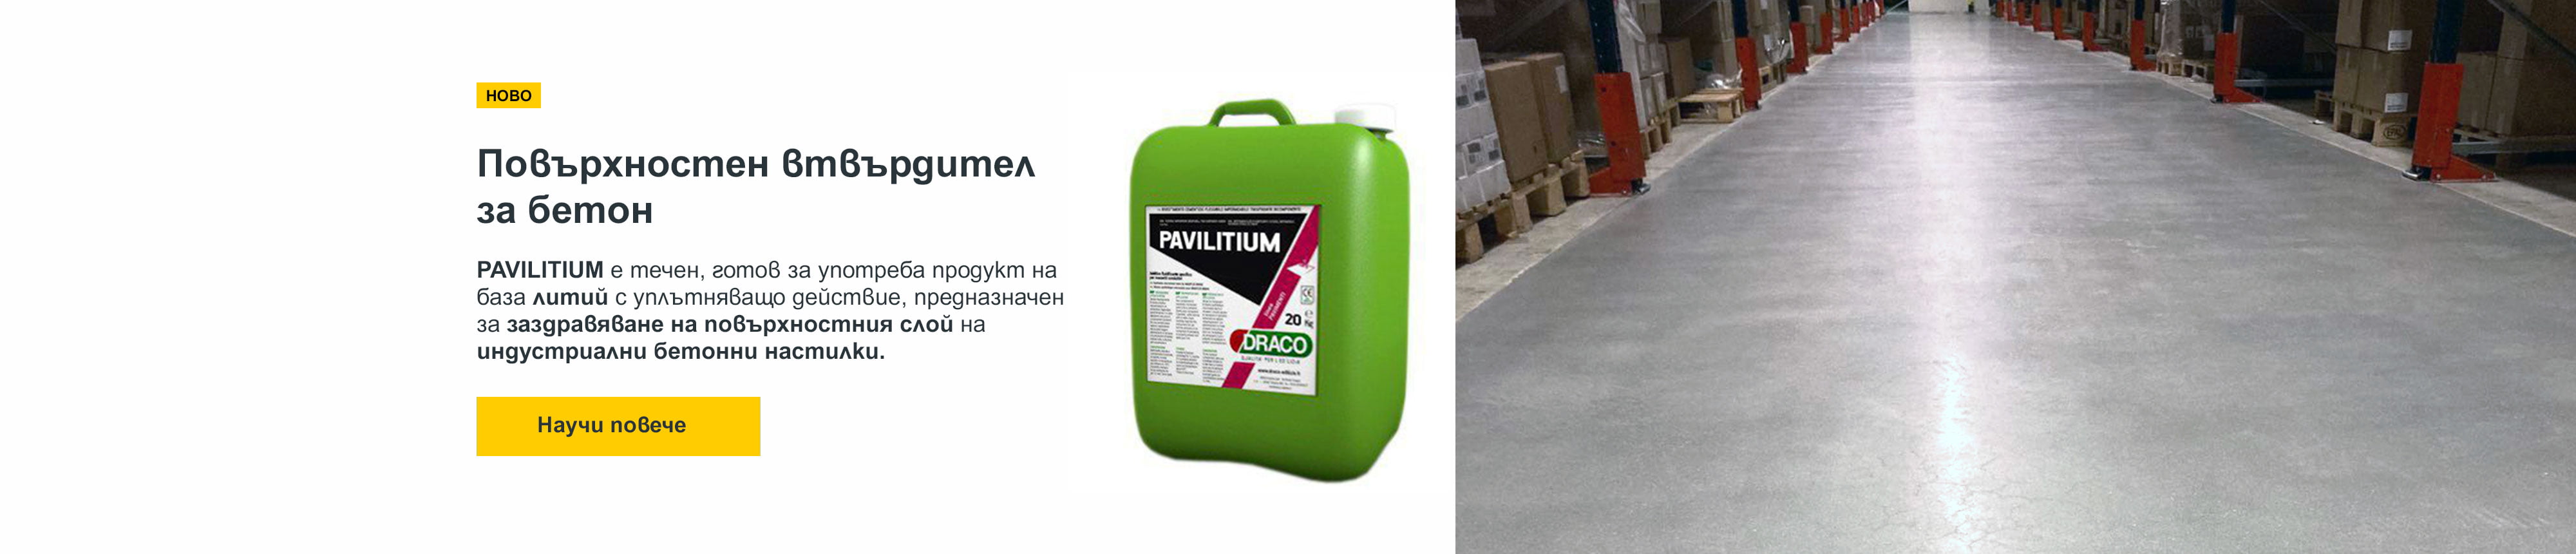 PAVILITIUM е течен, готов за употреба продукт на база силикати с уплътняващо действие, предназначен за заздравяване на повърхностния слой на индустриални бетонни настилки.